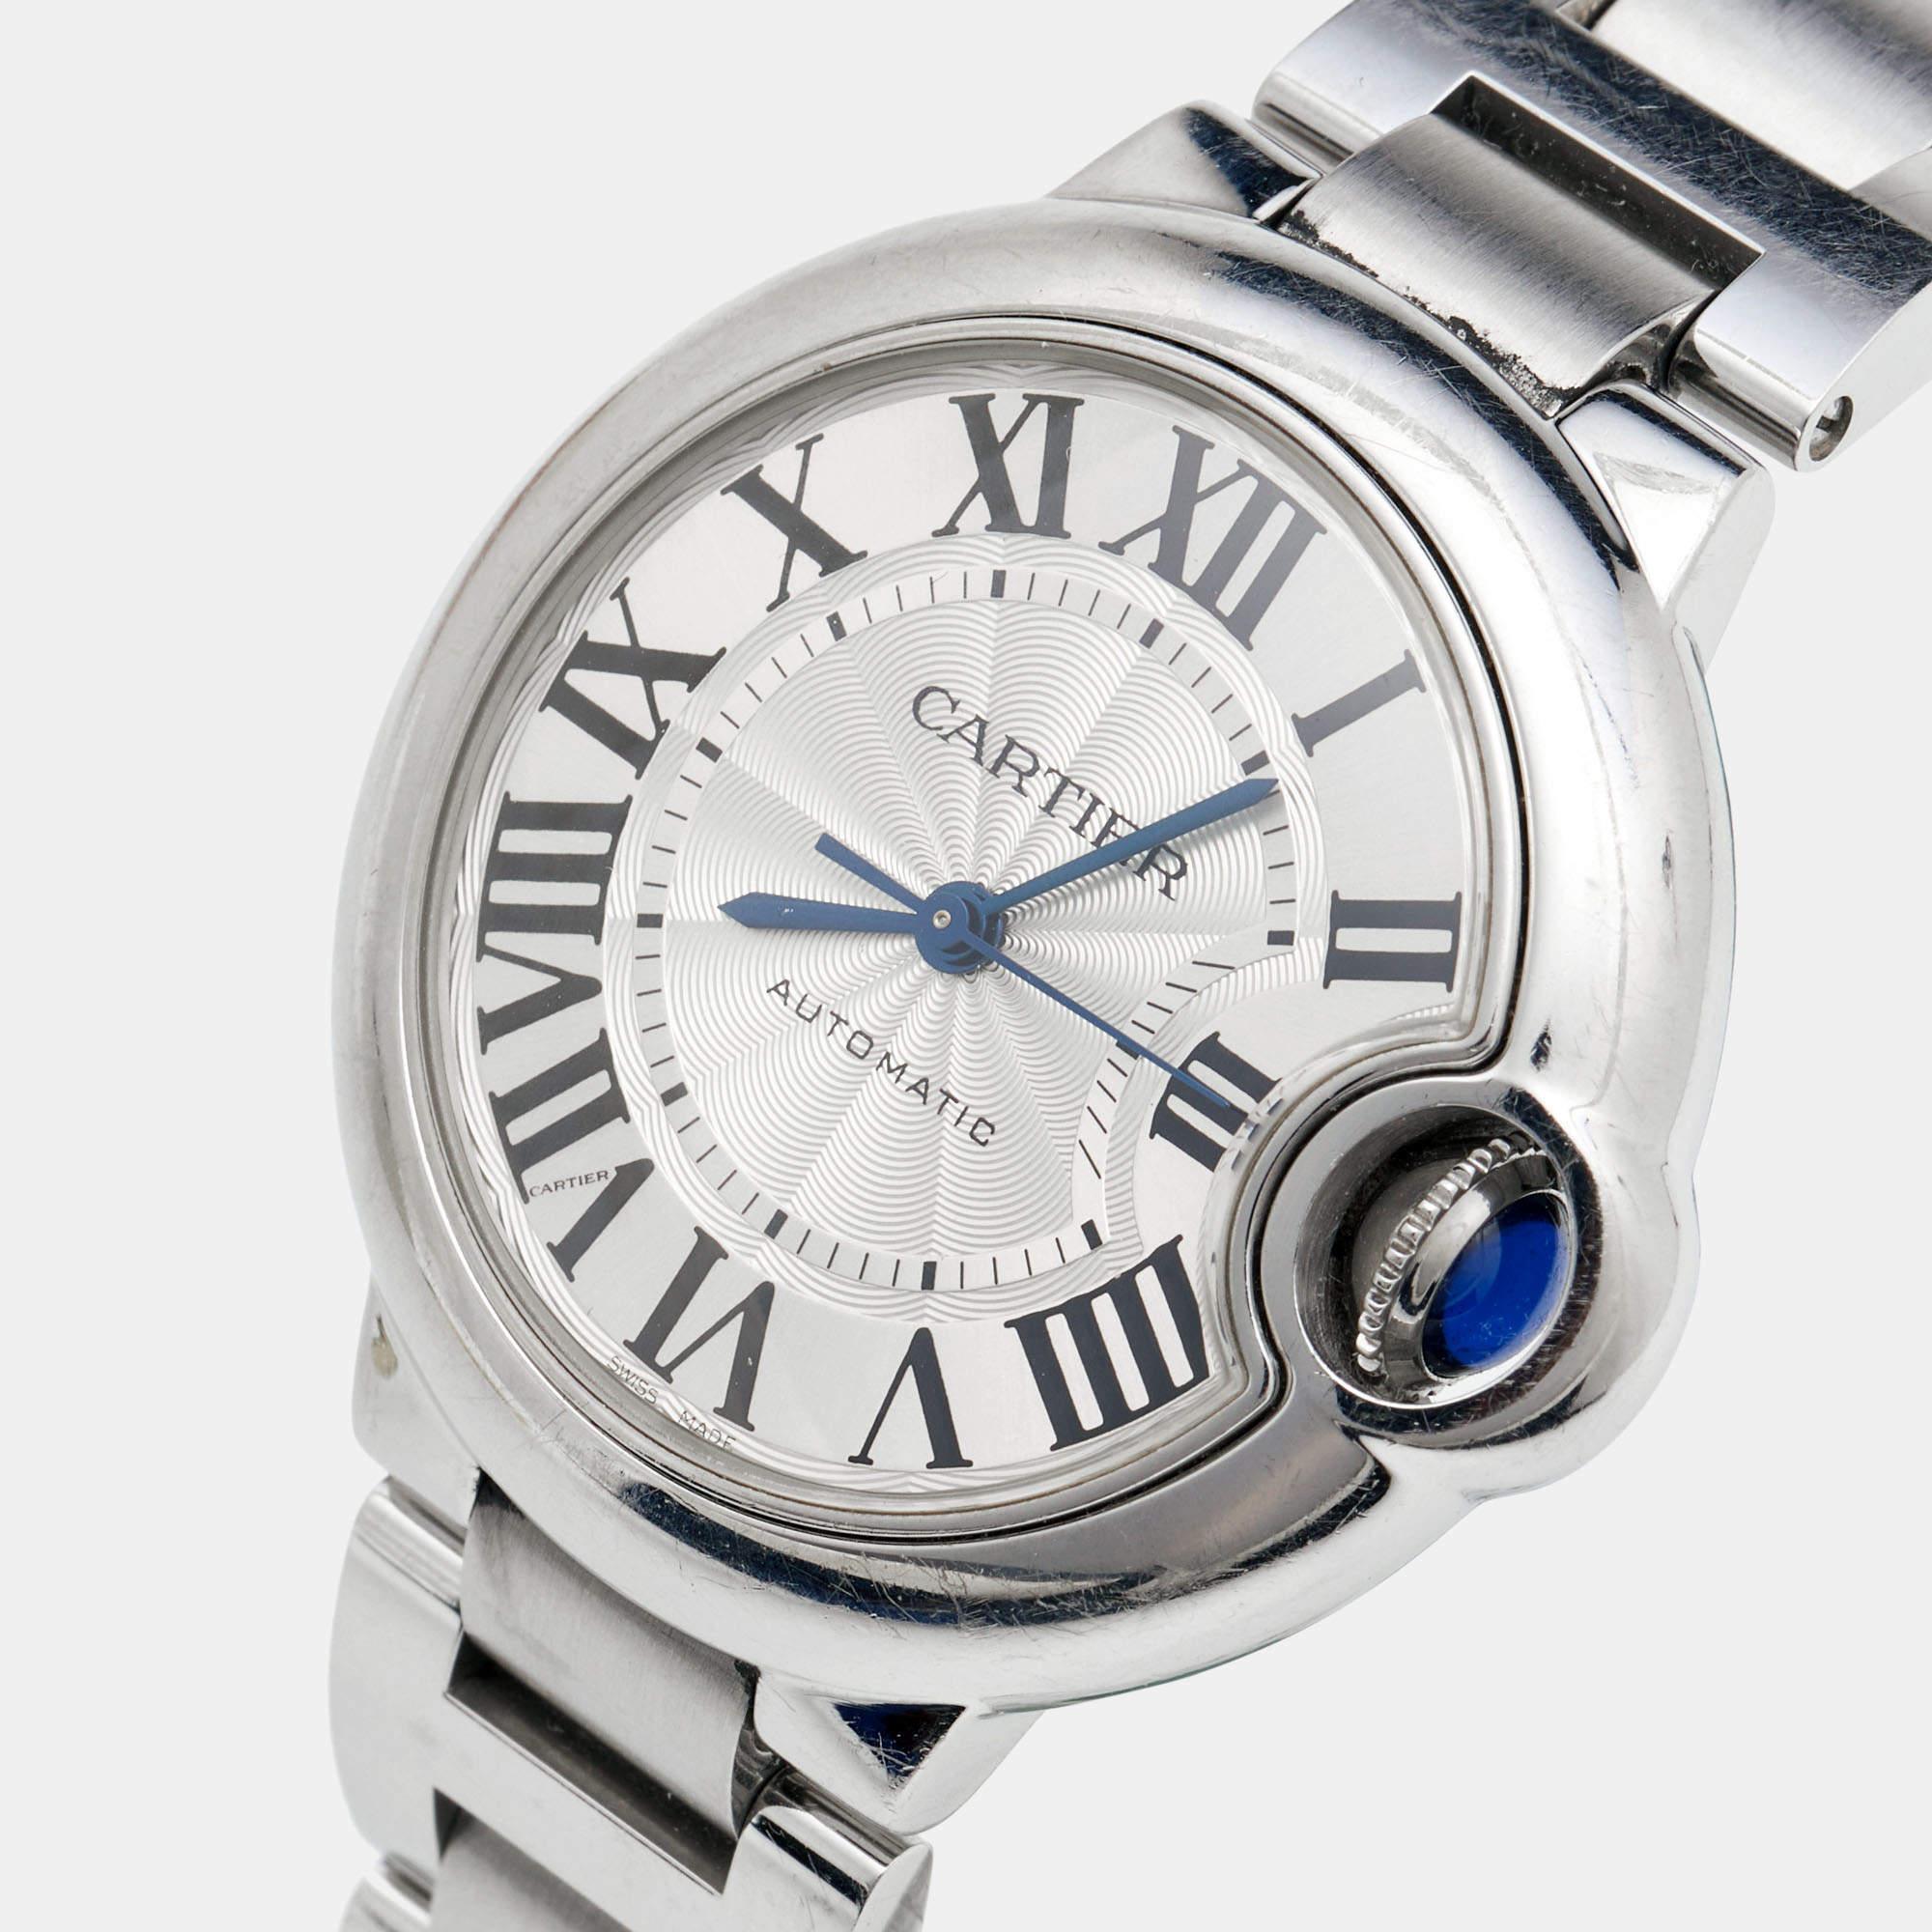 Die 2007 kreierte Cartier Ballon Bleu Uhr ist ein Lied der Details und der Harmonie. Die mittlerweile ikonische Uhr erhält ihre Identität durch die bewachte blaue Blase der Aufzugskrone an der Seite. Die Ballon Bleu W6920071 Uhr, die wir hier haben,